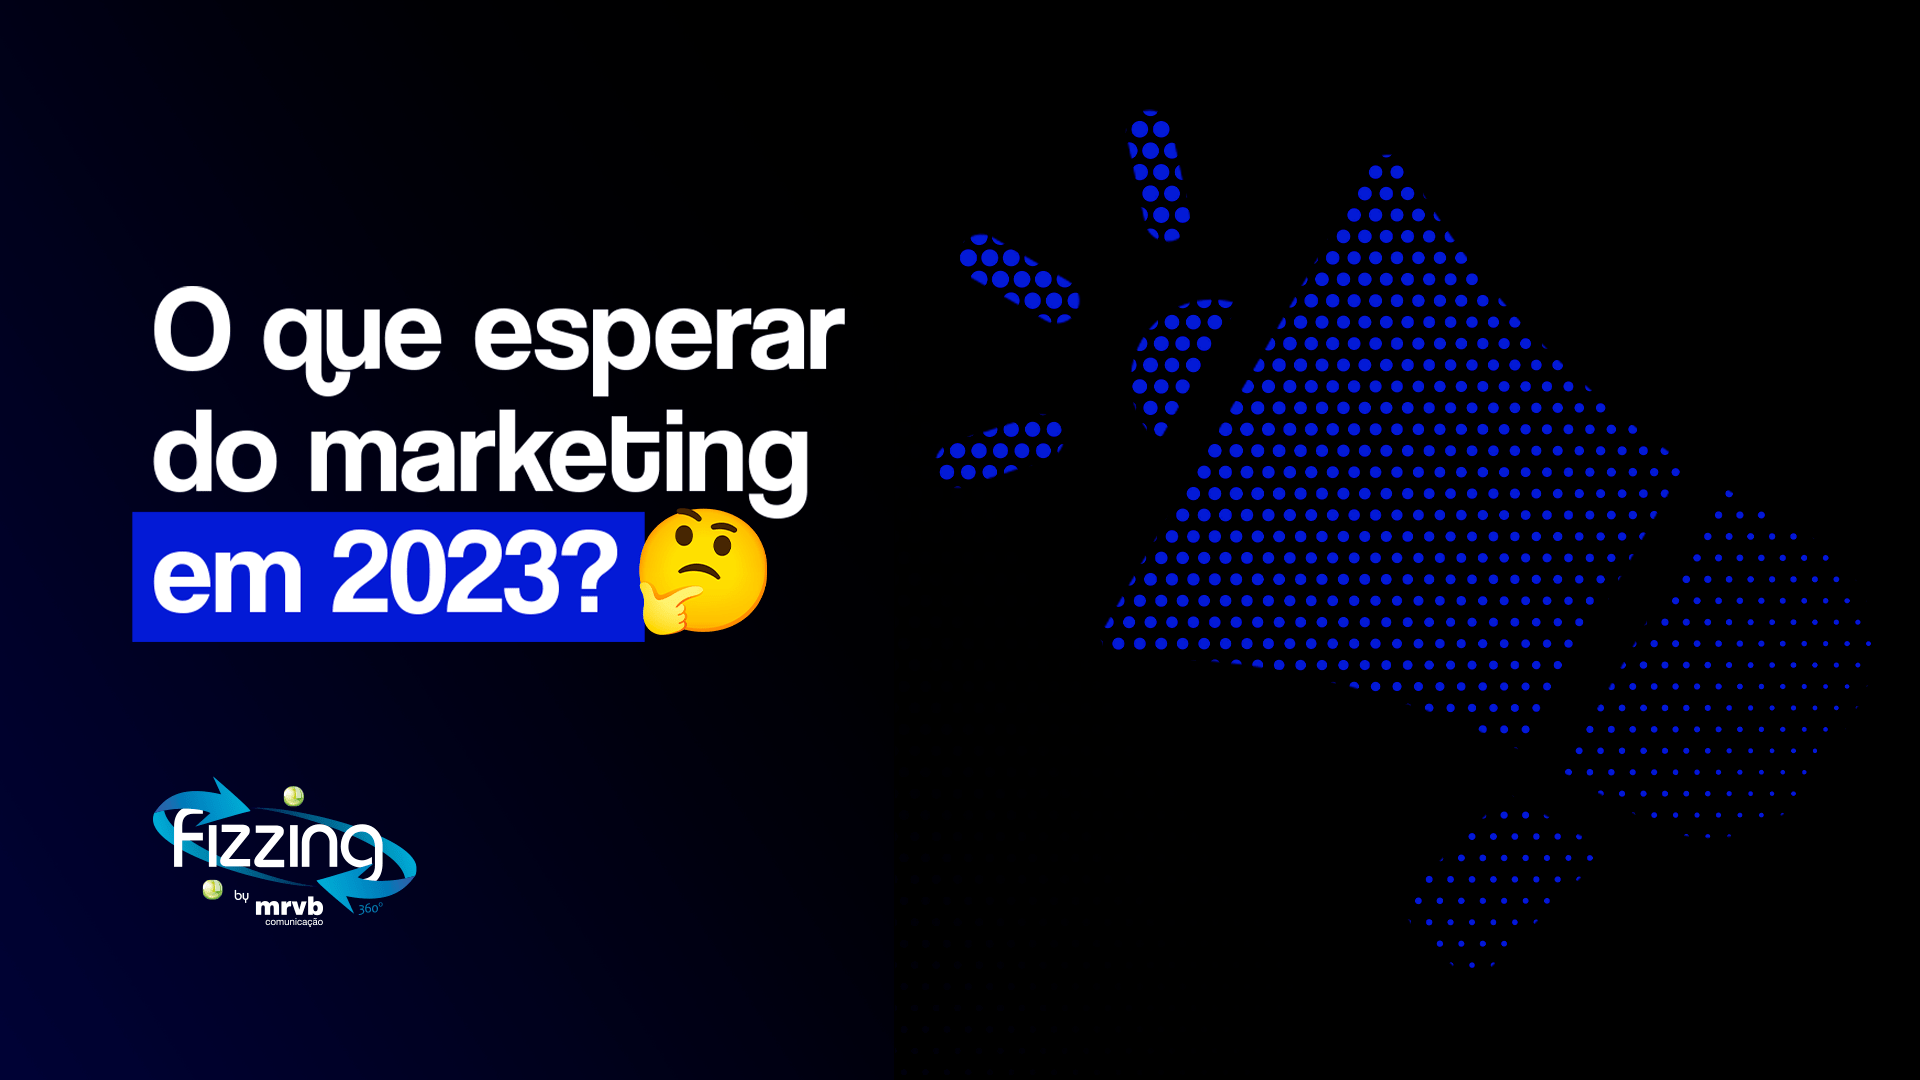 Ilustração de um alto-falante azul em um fundo preto e o seguinte texto no canto esquerdo: "O que esperar do marketing em 2023? ", com um emoji pensativo.